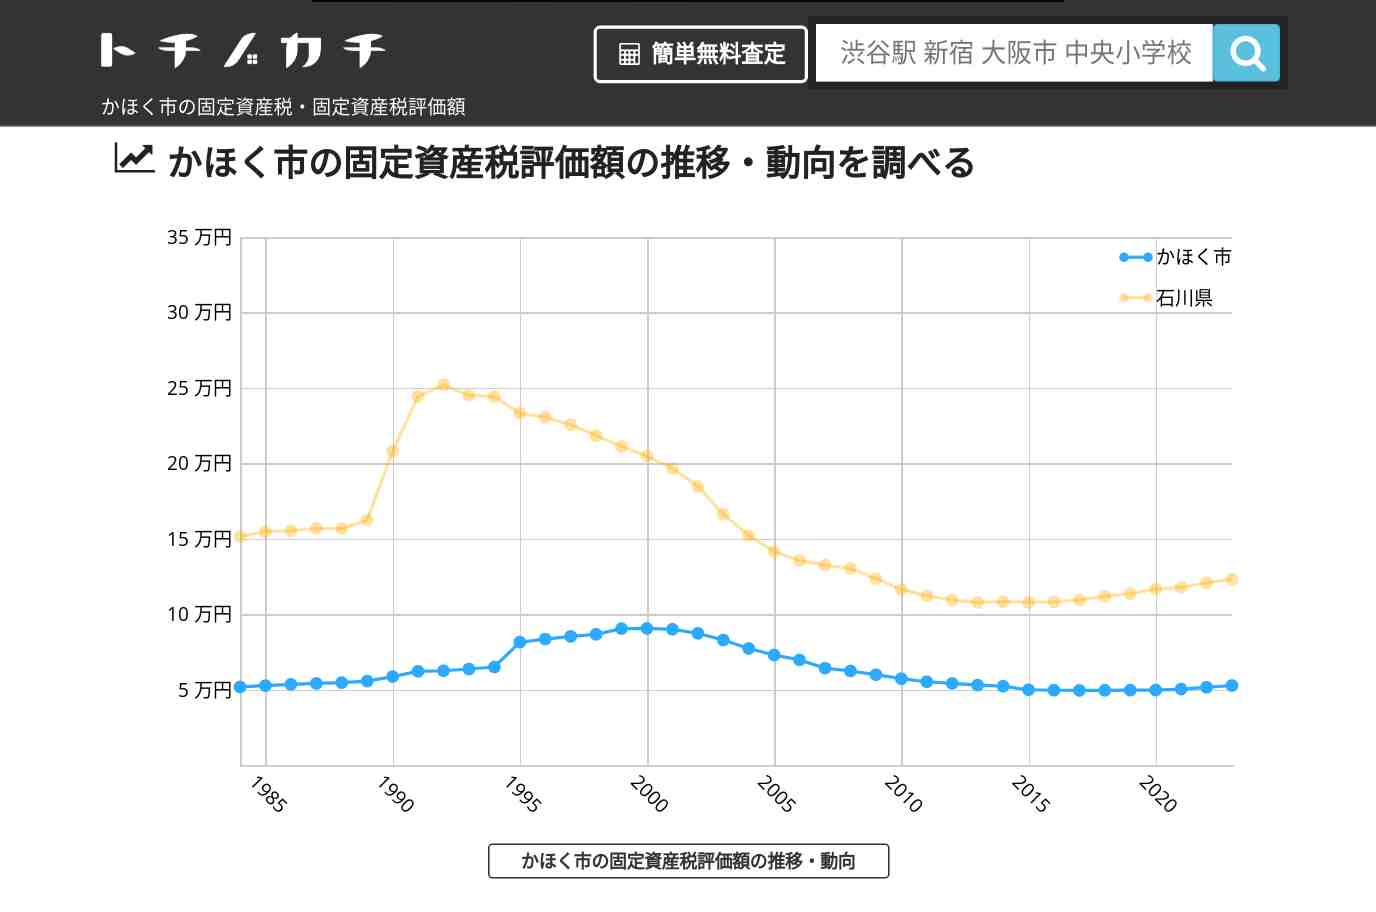 大海小学校(石川県 かほく市)周辺の固定資産税・固定資産税評価額 | トチノカチ